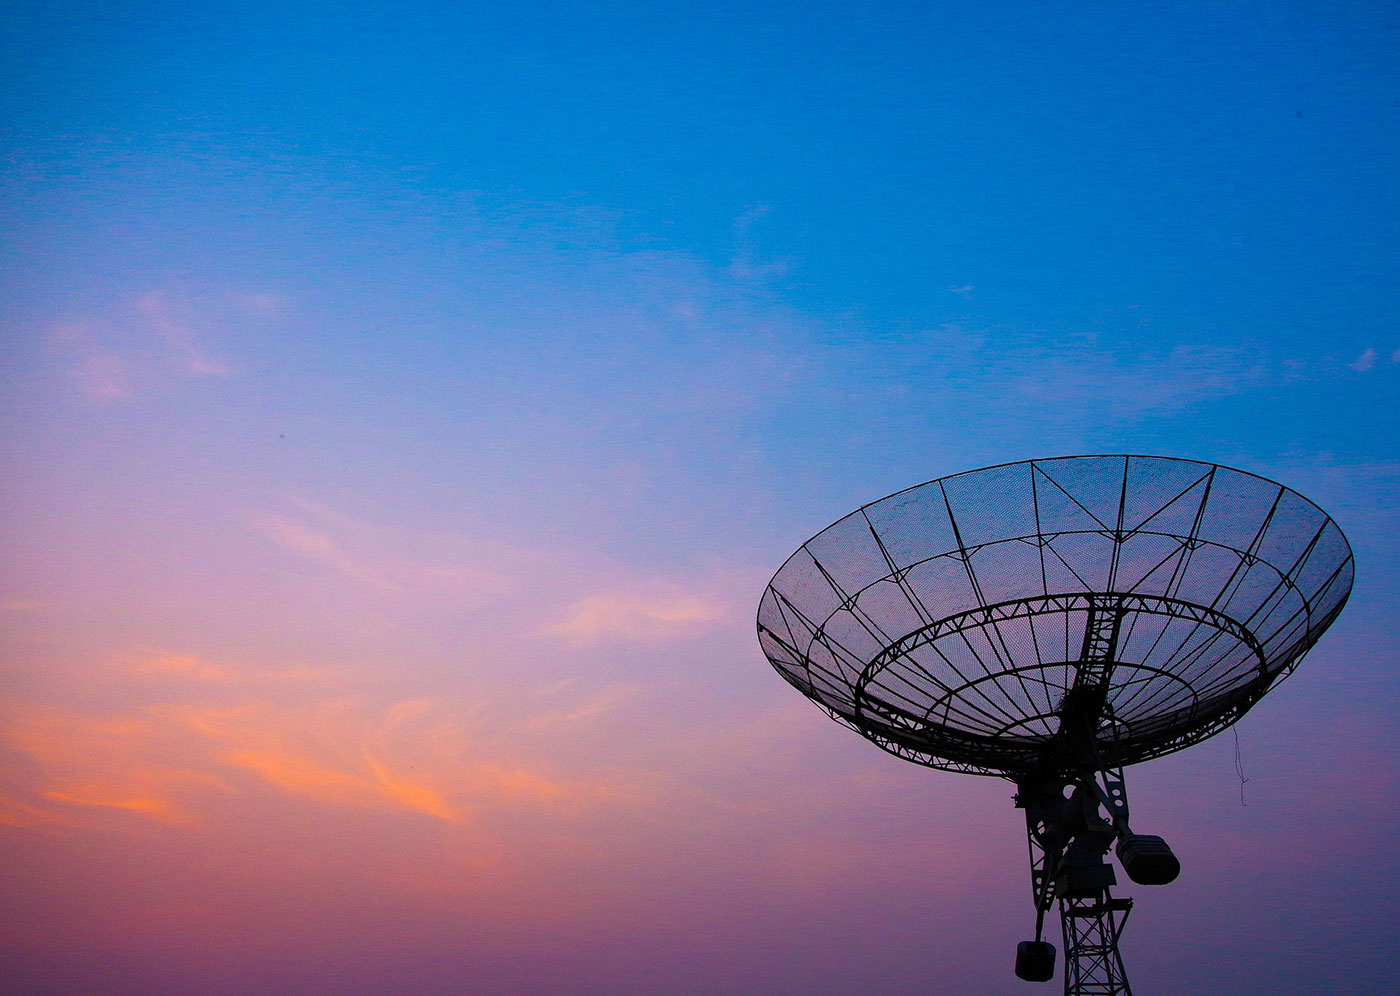 Radar dish at dusk